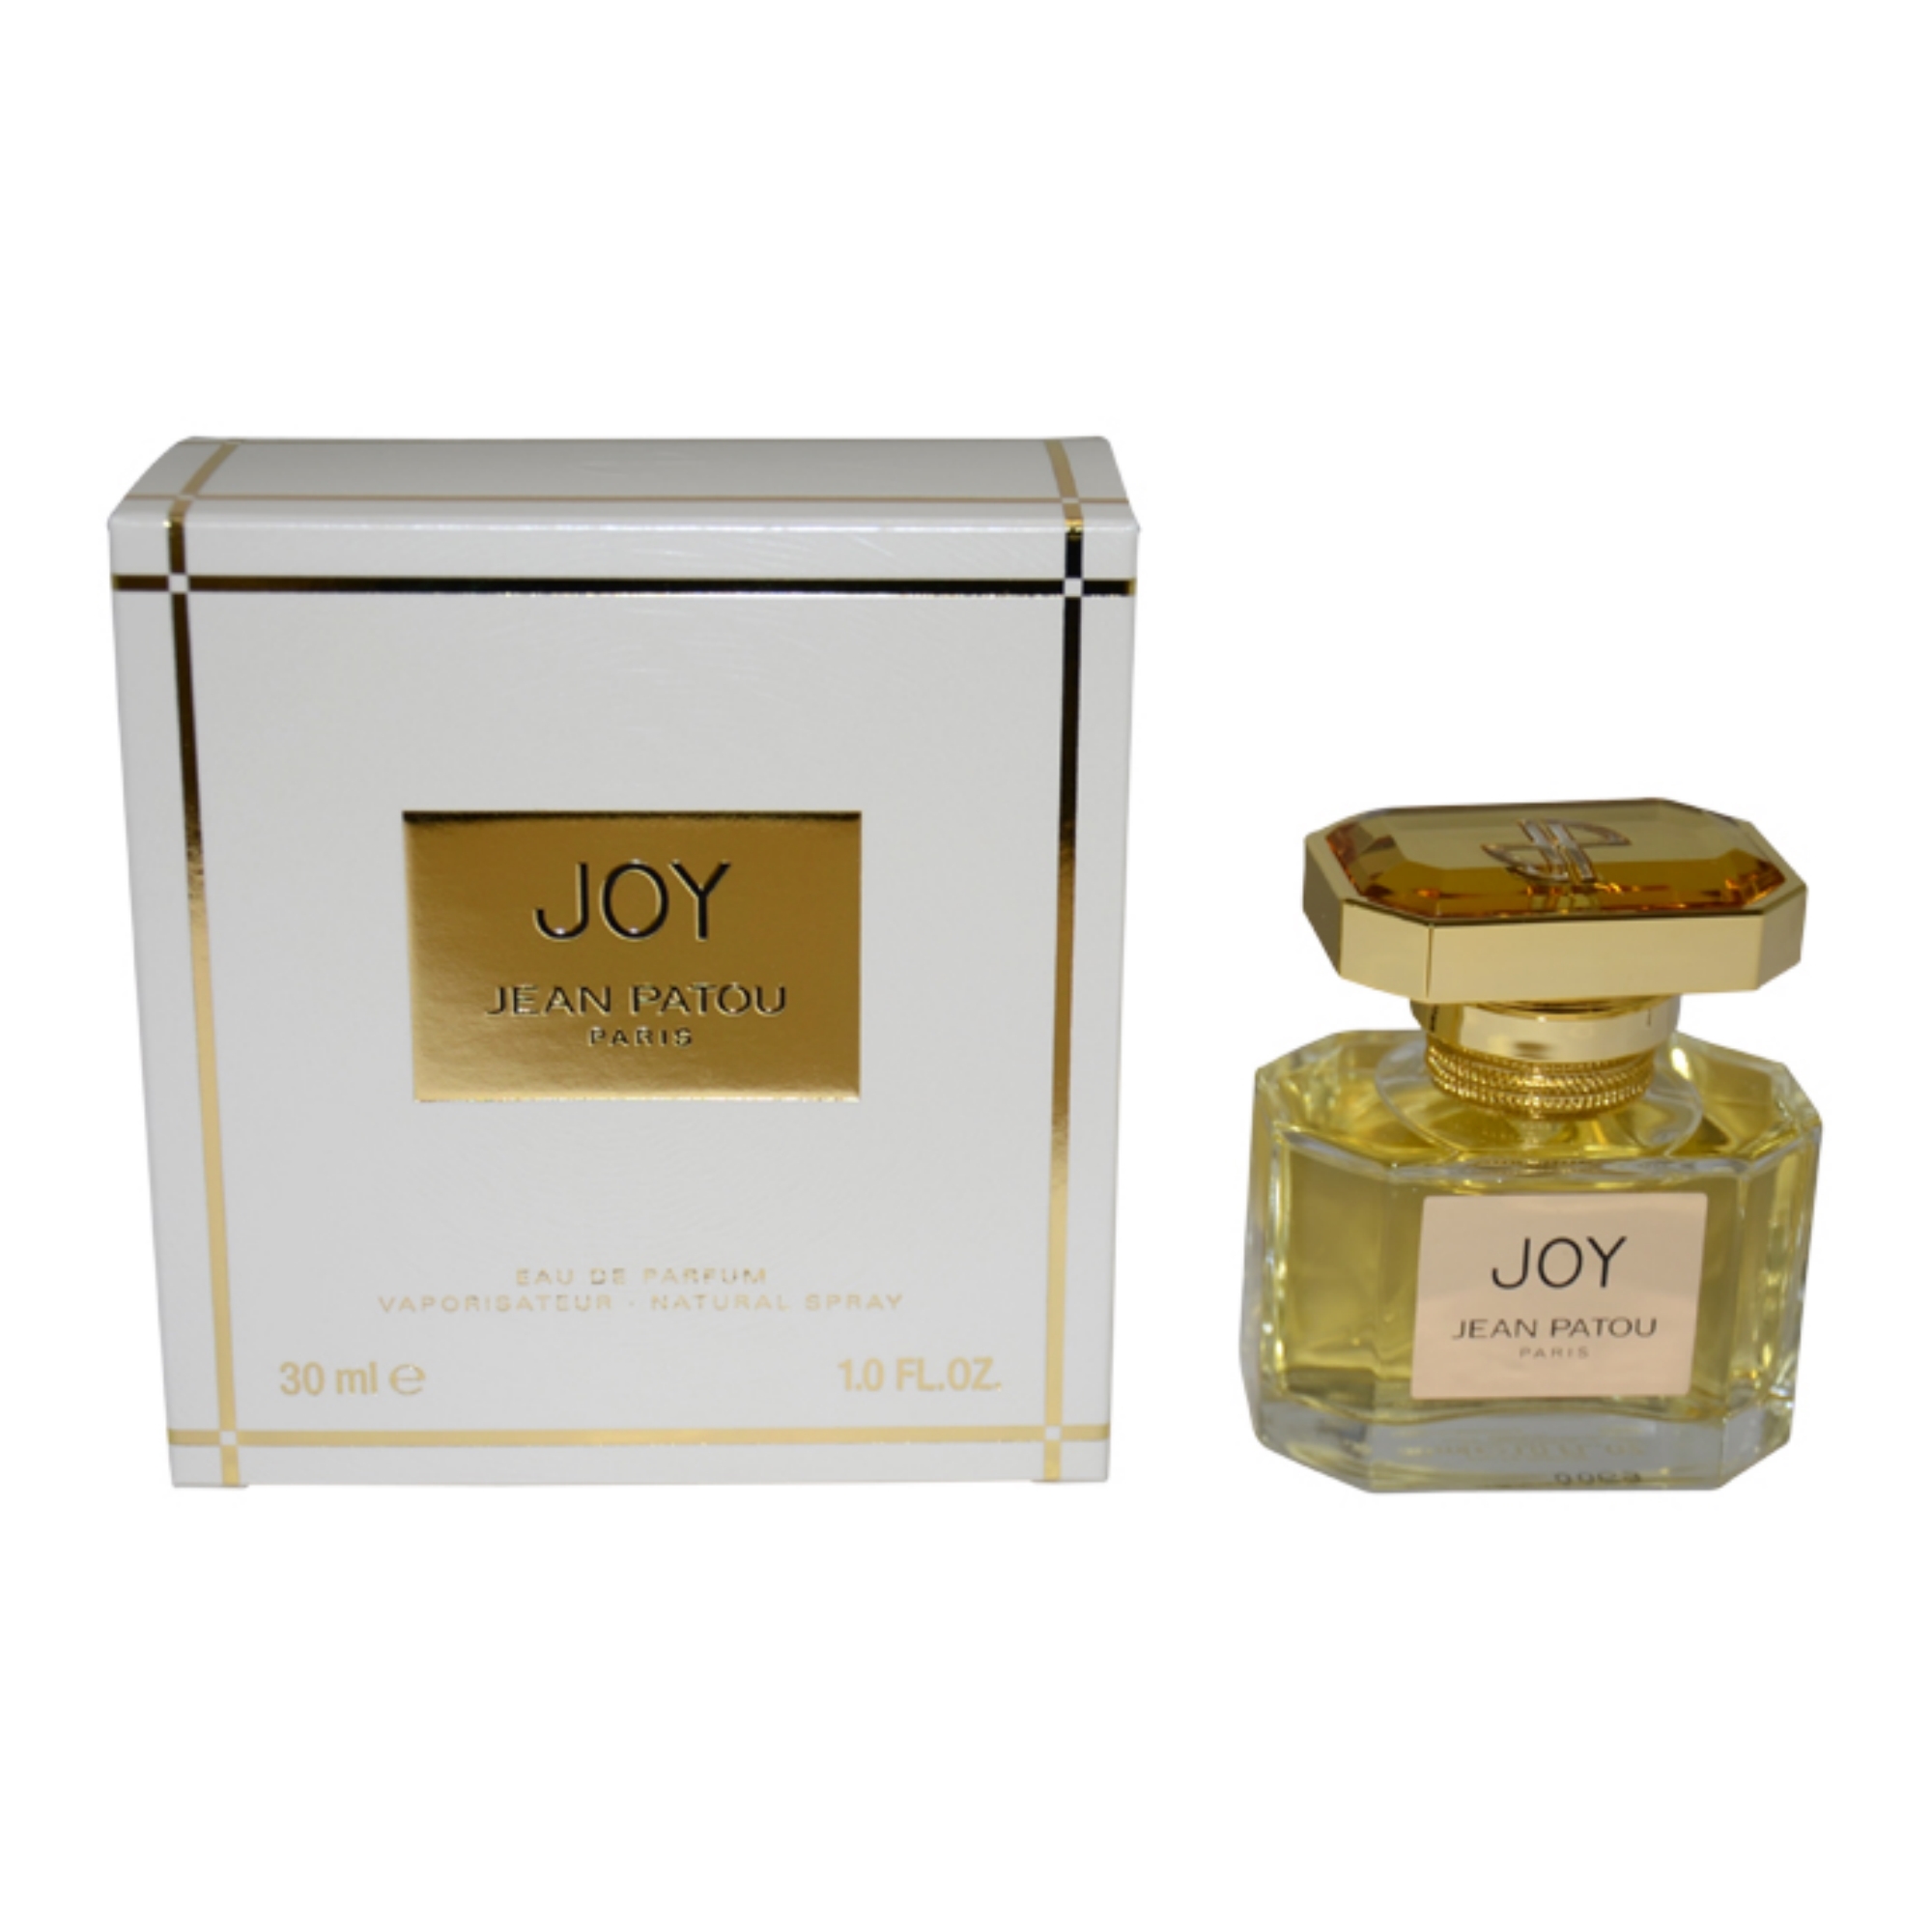 Joy by Jean Patou for Women - 1 oz EDP Spray